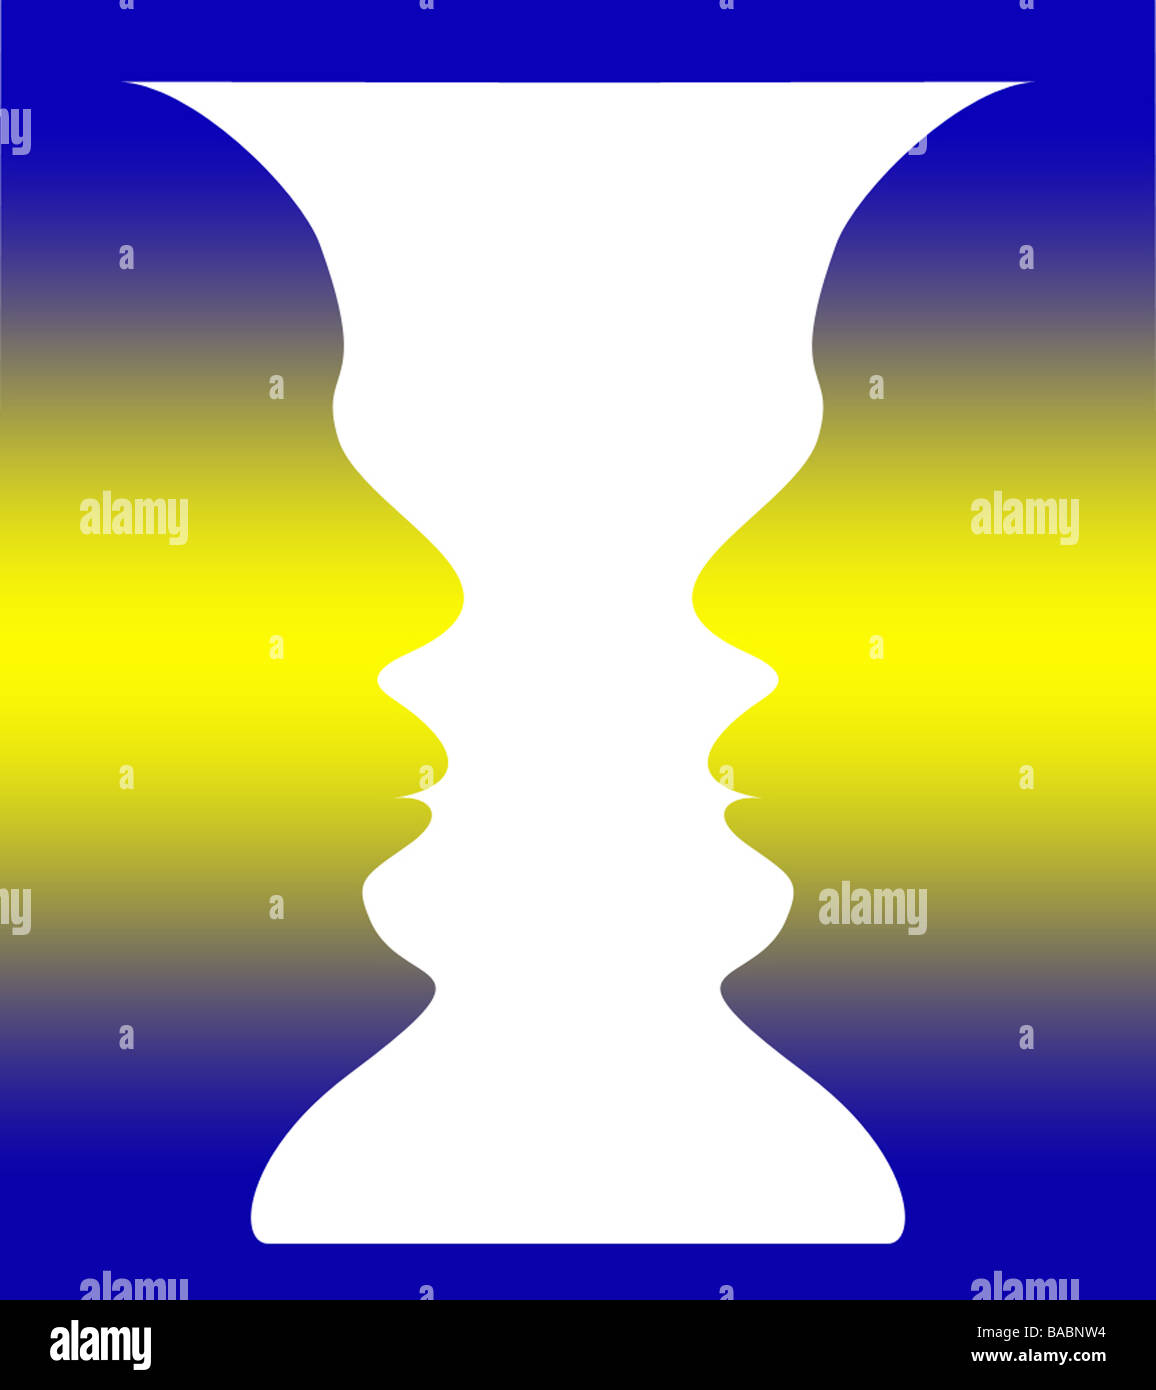 optische Täuschung einer Vase mit blau gelb hinterlegt oder zwei Menschen  einander zugewandt Stockfotografie - Alamy